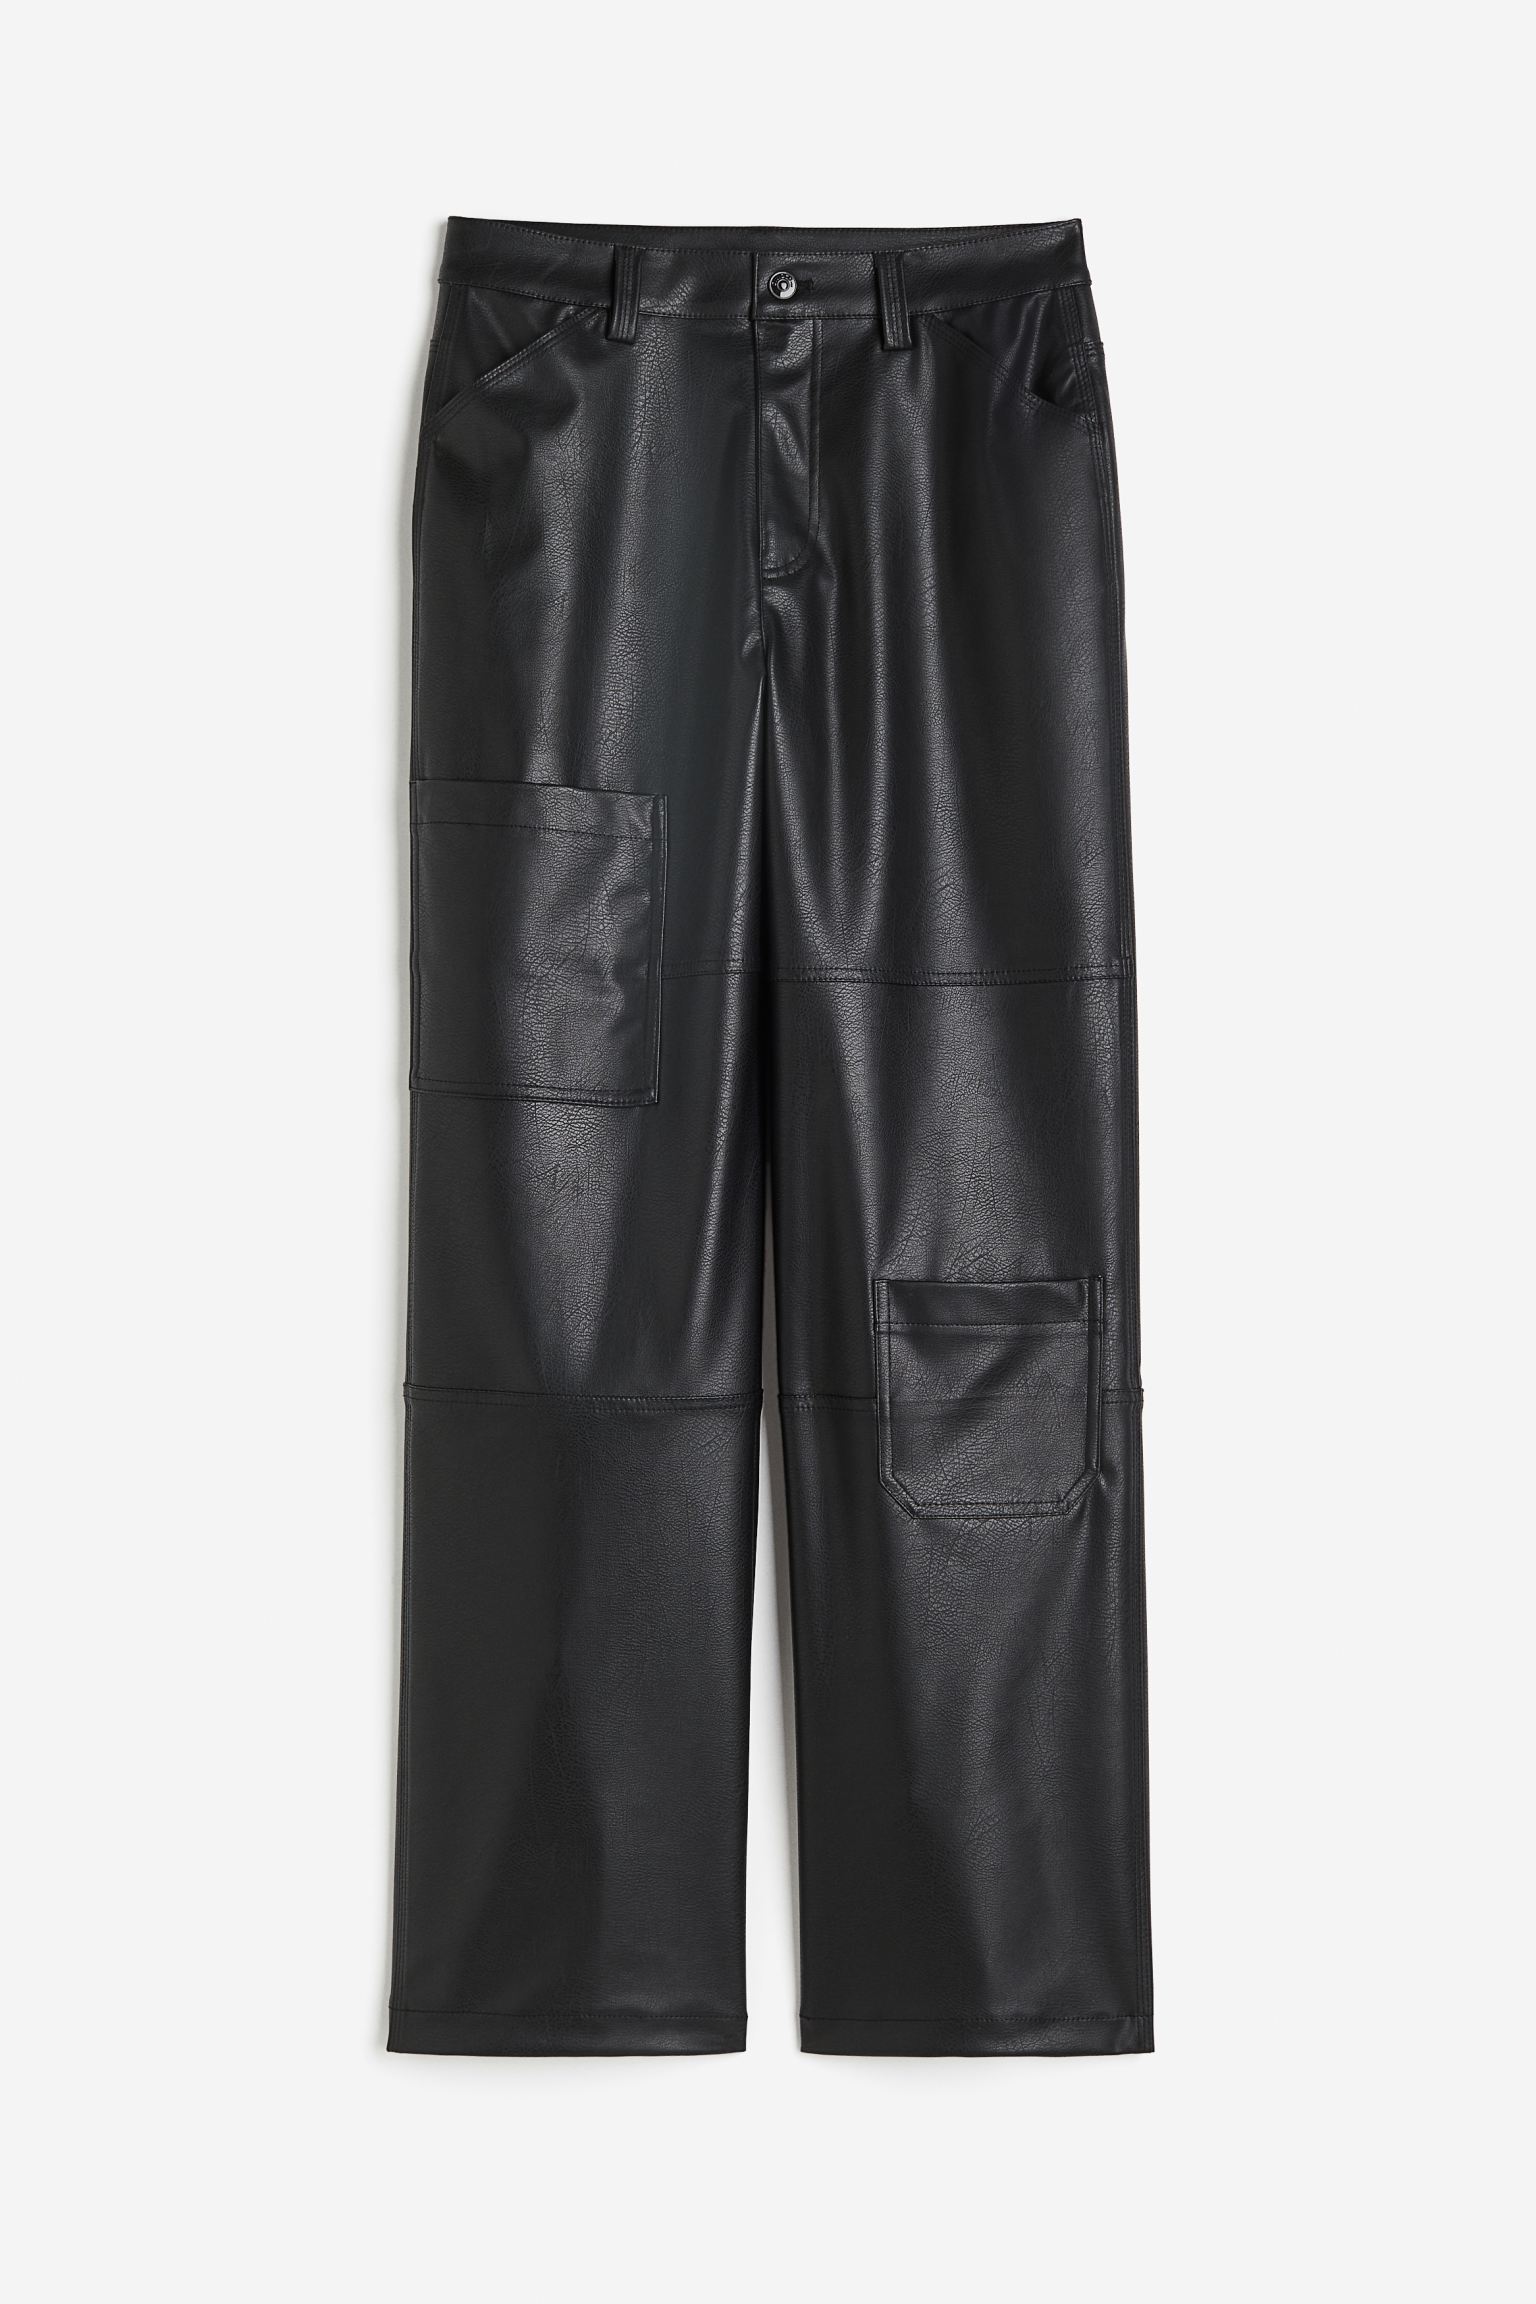 Брюки H&M Denim Cargo, черный мужские брюки карго коллекции 2021 года повседневные прямые свободные хлопковые однотонные брюки с высокой талией тактические брюки